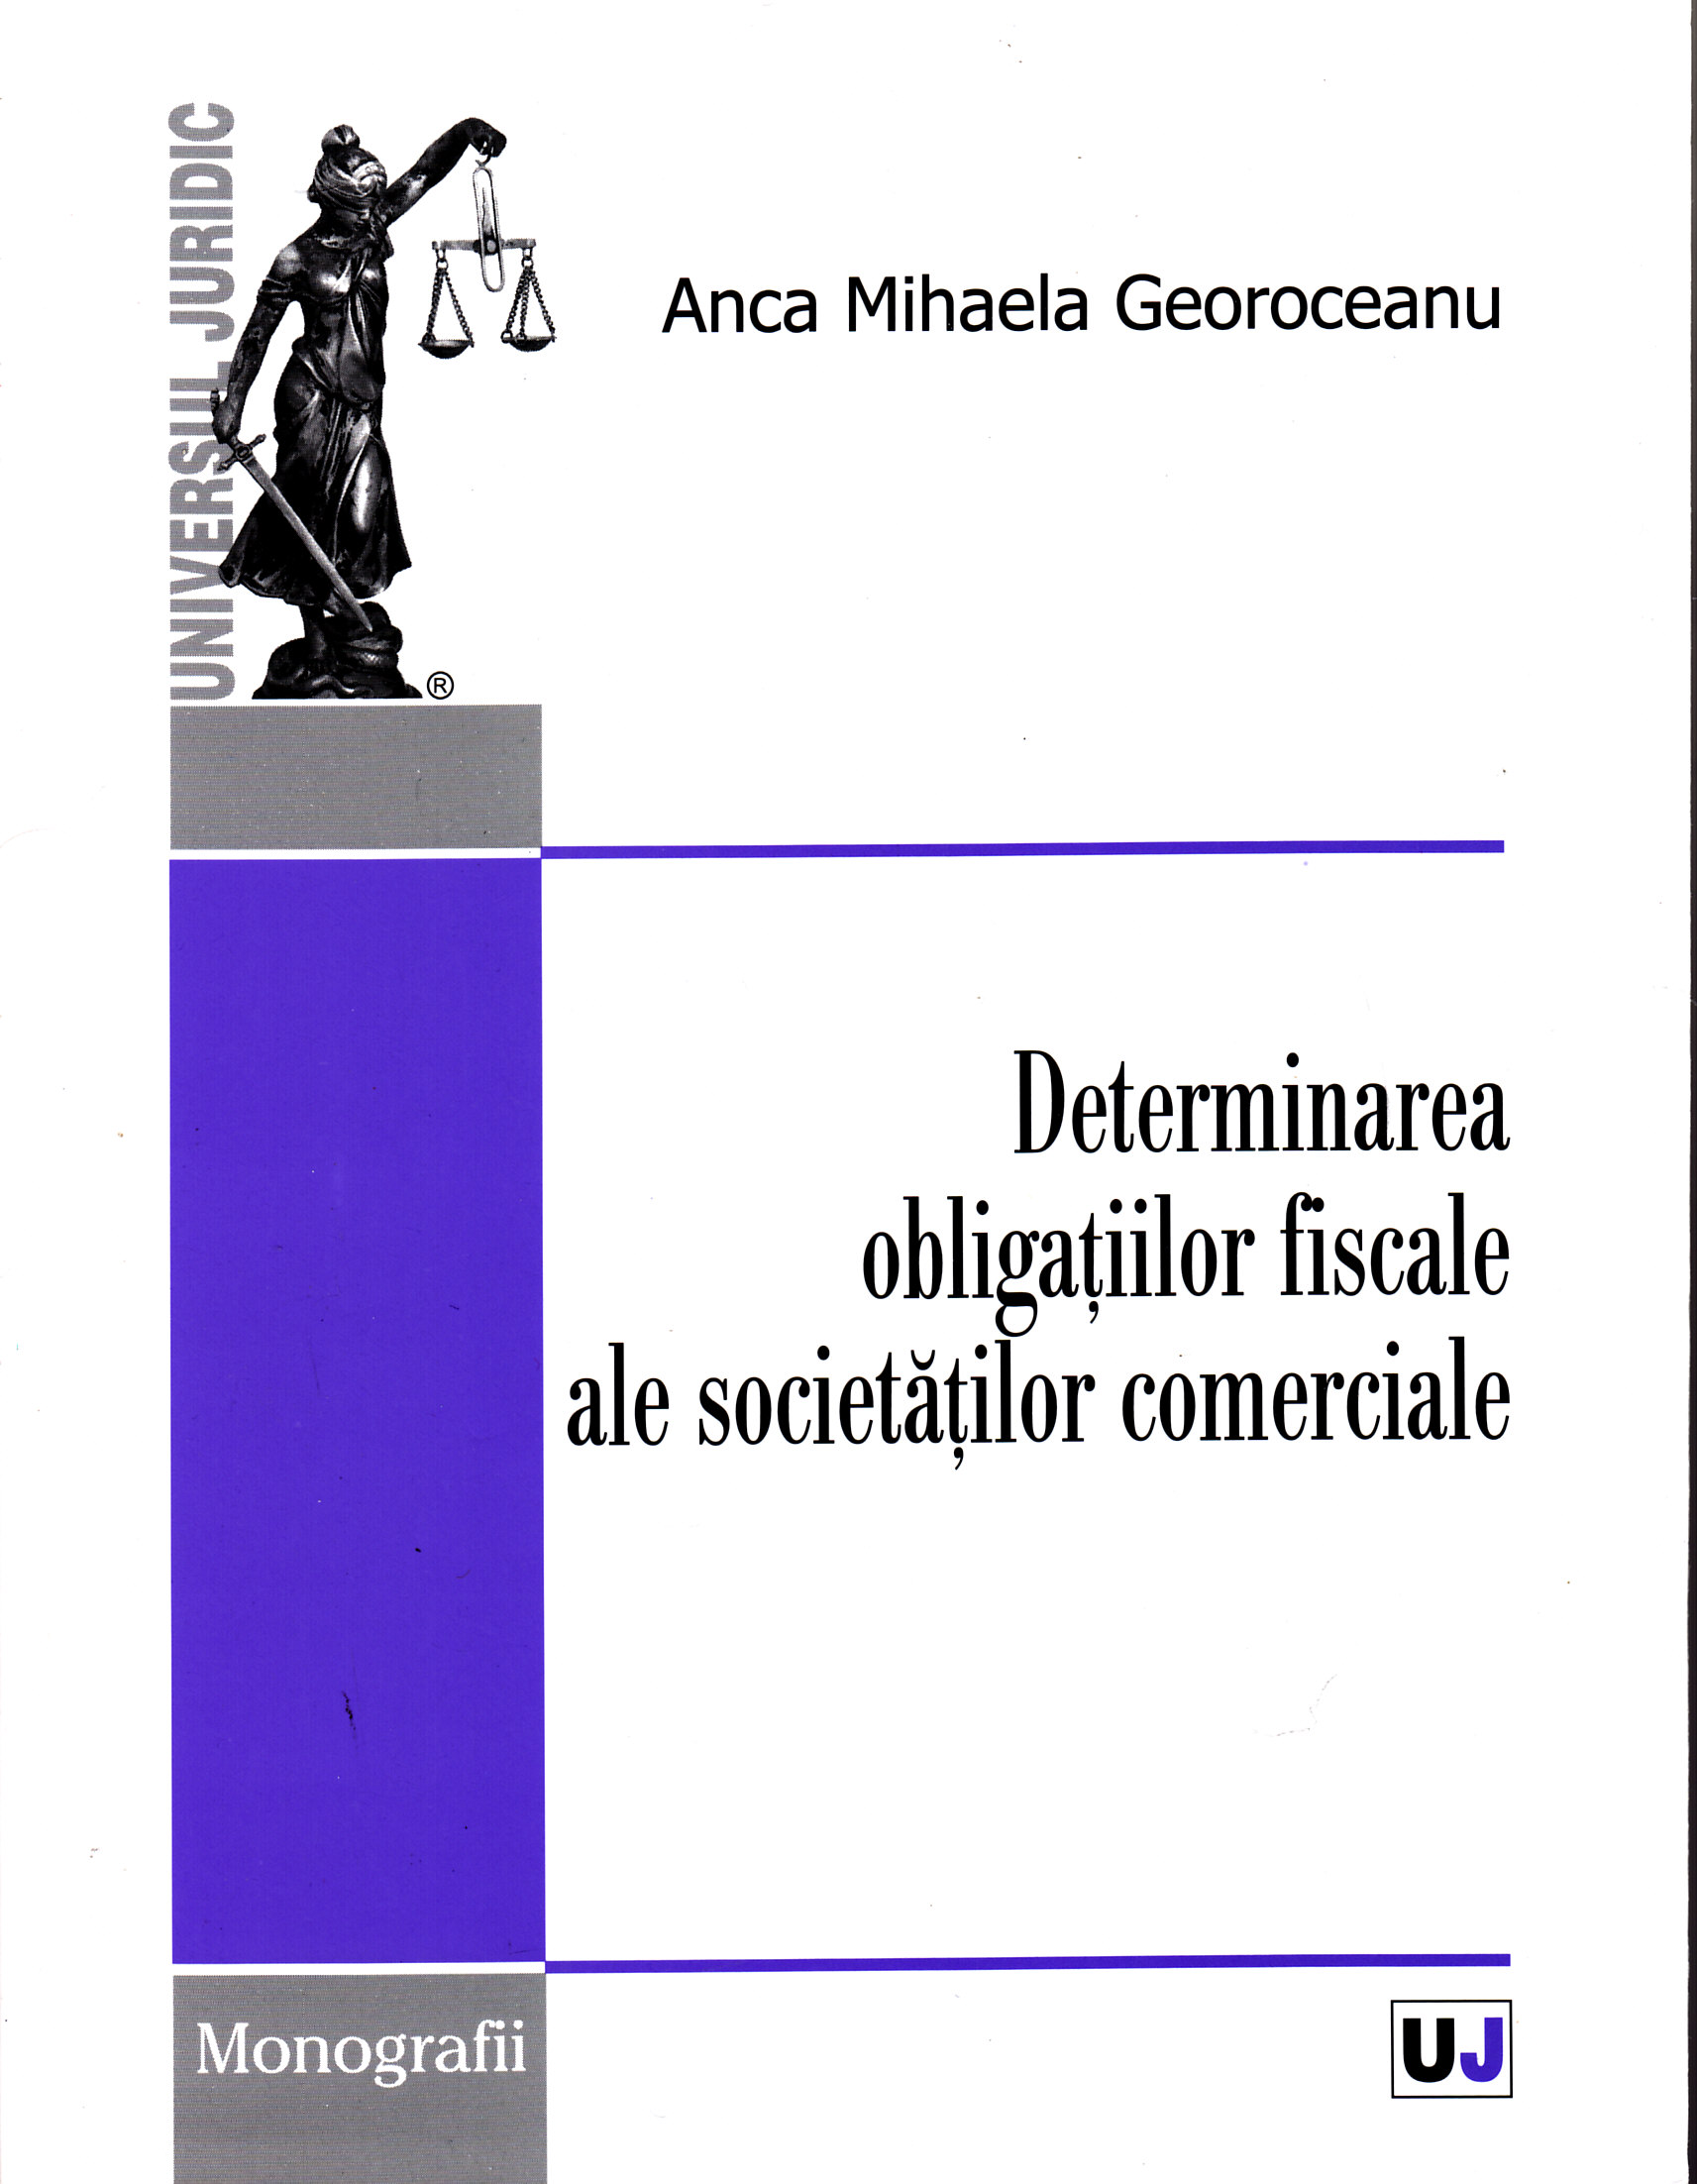 Determinarea obligatiilor fiscale ale societatilor comerciale - Anca Mihaela Georoceanu